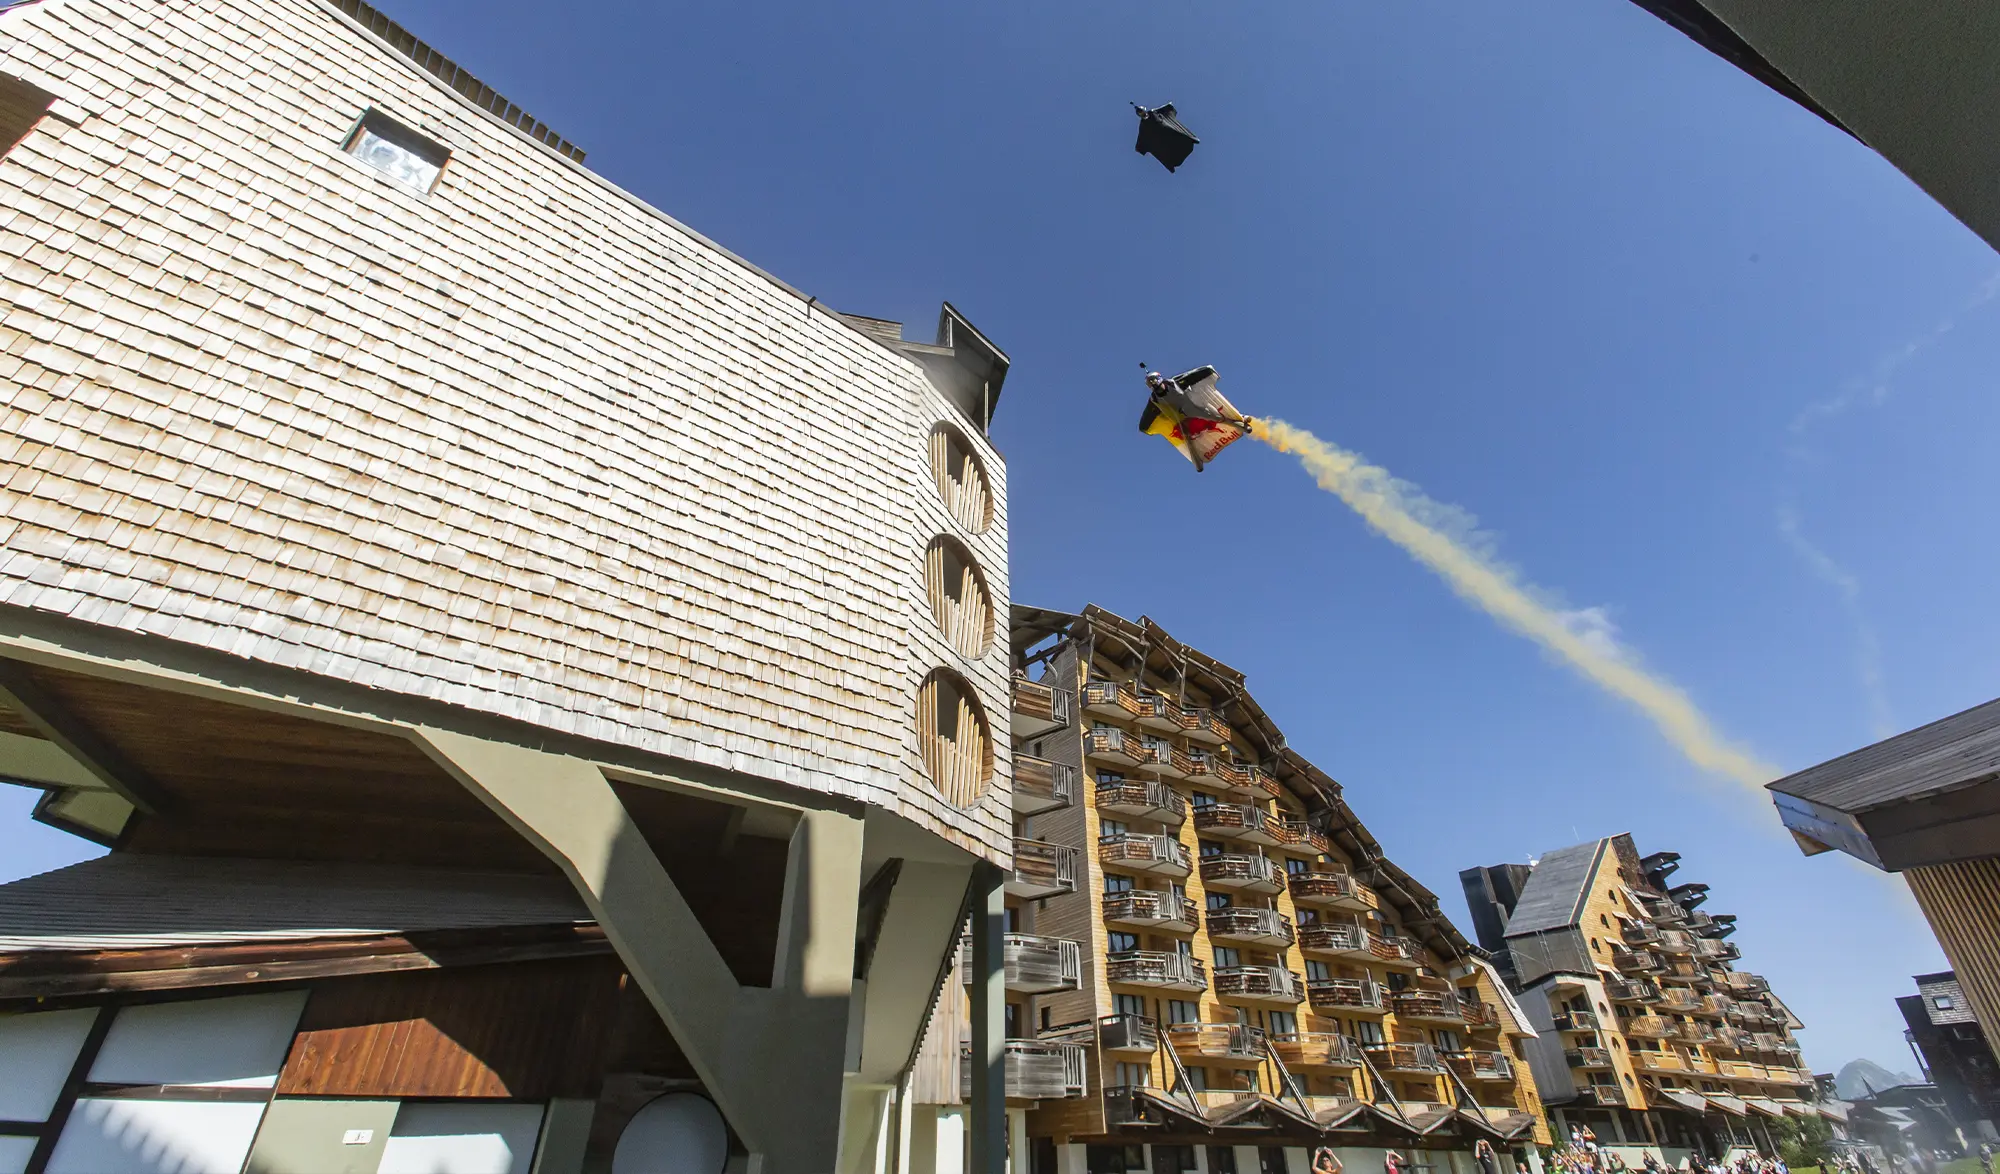 Soul flyers : Vol en wingsuit à travers les immeubles d'Avoriaz